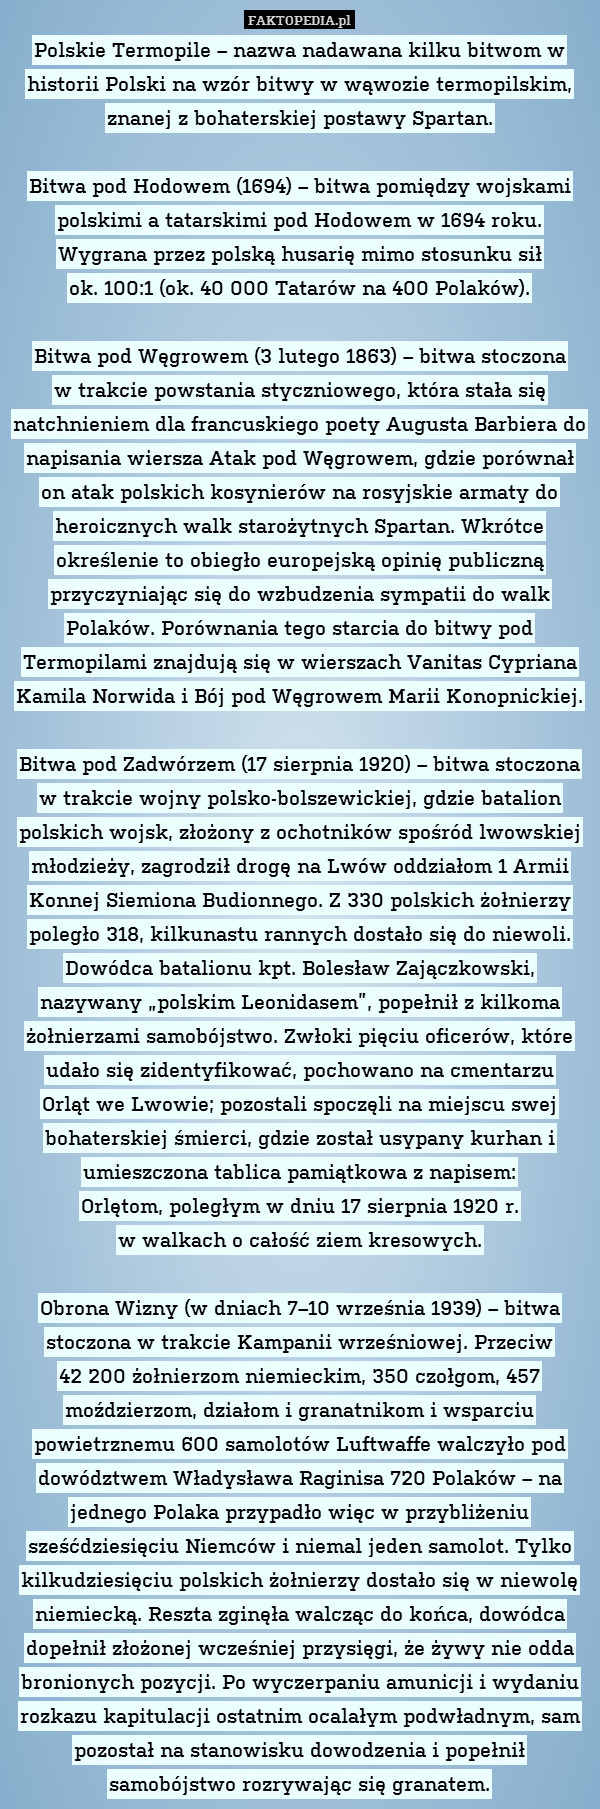 Polskie Termopile – nazwa nadawana kilku bitwom w historii Polski na wzór bitwy w wąwozie termopilskim, znanej z bohaterskiej postawy Spartan.

Bitwa pod Hodowem (1694) – bitwa pomiędzy wojskami polskimi a tatarskimi pod Hodowem w 1694 roku. Wygrana przez polską husarię mimo stosunku sił
ok. 100:1 (ok. 40 000 Tatarów na 400 Polaków).

Bitwa pod Węgrowem (3 lutego 1863) – bitwa stoczona
w trakcie powstania styczniowego, która stała się natchnieniem dla francuskiego poety Augusta Barbiera do napisania wiersza Atak pod Węgrowem, gdzie porównał on atak polskich kosynierów na rosyjskie armaty do heroicznych walk starożytnych Spartan. Wkrótce określenie to obiegło europejską opinię publiczną przyczyniając się do wzbudzenia sympatii do walk Polaków. Porównania tego starcia do bitwy pod Termopilami znajdują się w wierszach Vanitas Cypriana Kamila Norwida i Bój pod Węgrowem Marii Konopnickiej.

Bitwa pod Zadwórzem (17 sierpnia 1920) – bitwa stoczona w trakcie wojny polsko-bolszewickiej, gdzie batalion polskich wojsk, złożony z ochotników spośród lwowskiej młodzieży, zagrodził drogę na Lwów oddziałom 1 Armii Konnej Siemiona Budionnego. Z 330 polskich żołnierzy poległo 318, kilkunastu rannych dostało się do niewoli. Dowódca batalionu kpt. Bolesław Zajączkowski, nazywany „polskim Leonidasem”, popełnił z kilkoma żołnierzami samobójstwo. Zwłoki pięciu oficerów, które udało się zidentyfikować, pochowano na cmentarzu
Orląt we Lwowie; pozostali spoczęli na miejscu swej bohaterskiej śmierci, gdzie został usypany kurhan i umieszczona tablica pamiątkowa z napisem:
Orlętom, poległym w dniu 17 sierpnia 1920 r.
w walkach o całość ziem kresowych.

Obrona Wizny (w dniach 7–10 września 1939) – bitwa stoczona w trakcie Kampanii wrześniowej. Przeciw
42 200 żołnierzom niemieckim, 350 czołgom, 457 moździerzom, działom i granatnikom i wsparciu powietrznemu 600 samolotów Luftwaffe walczyło pod dowództwem Władysława Raginisa 720 Polaków – na jednego Polaka przypadło więc w przybliżeniu sześćdziesięciu Niemców i niemal jeden samolot. Tylko kilkudziesięciu polskich żołnierzy dostało się w niewolę niemiecką. Reszta zginęła walcząc do końca, dowódca dopełnił złożonej wcześniej przysięgi, że żywy nie odda bronionych pozycji. Po wyczerpaniu amunicji i wydaniu rozkazu kapitulacji ostatnim ocalałym podwładnym, sam pozostał na stanowisku dowodzenia i popełnił samobójstwo rozrywając się granatem. 